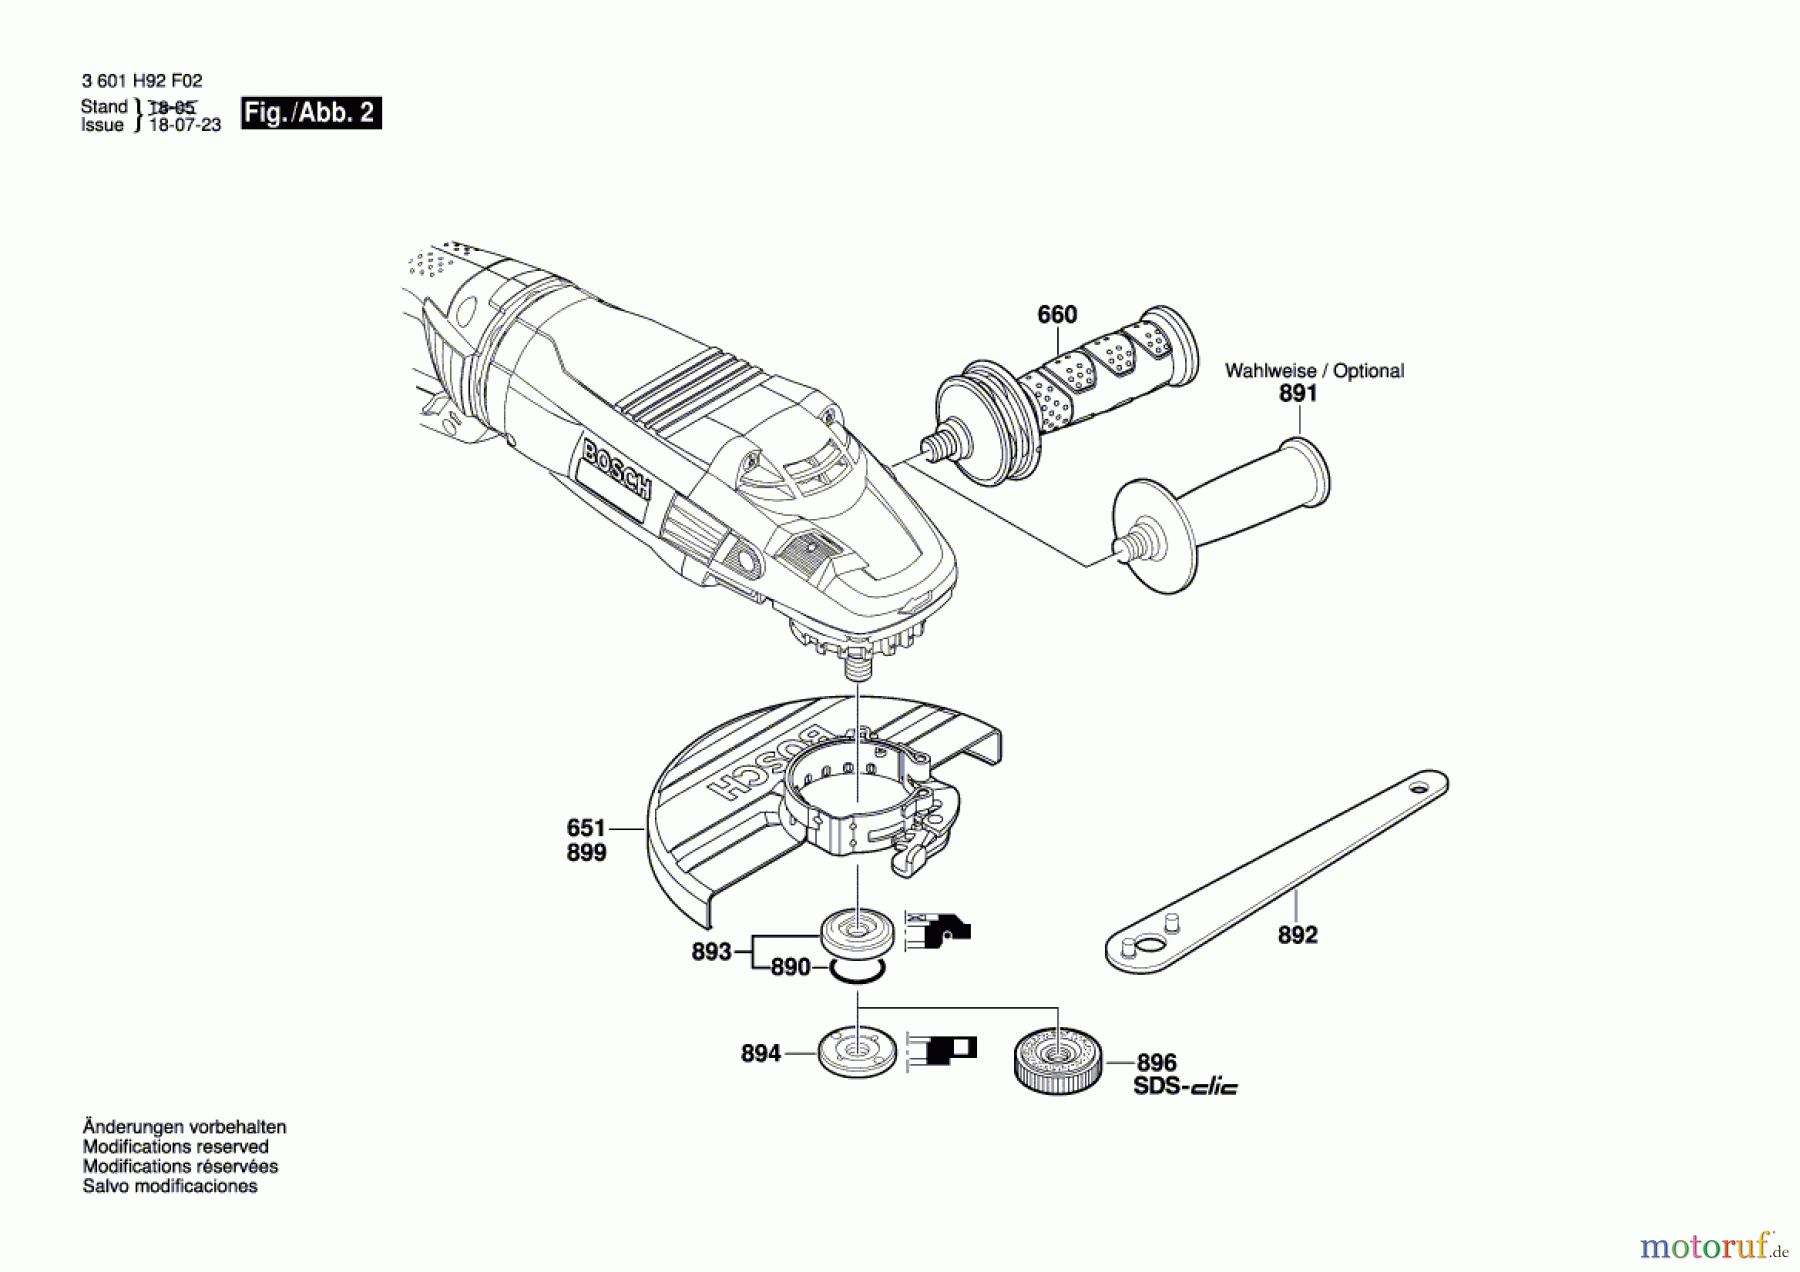  Bosch Werkzeug Winkelschleifer GWS 24-230 LVI Seite 2